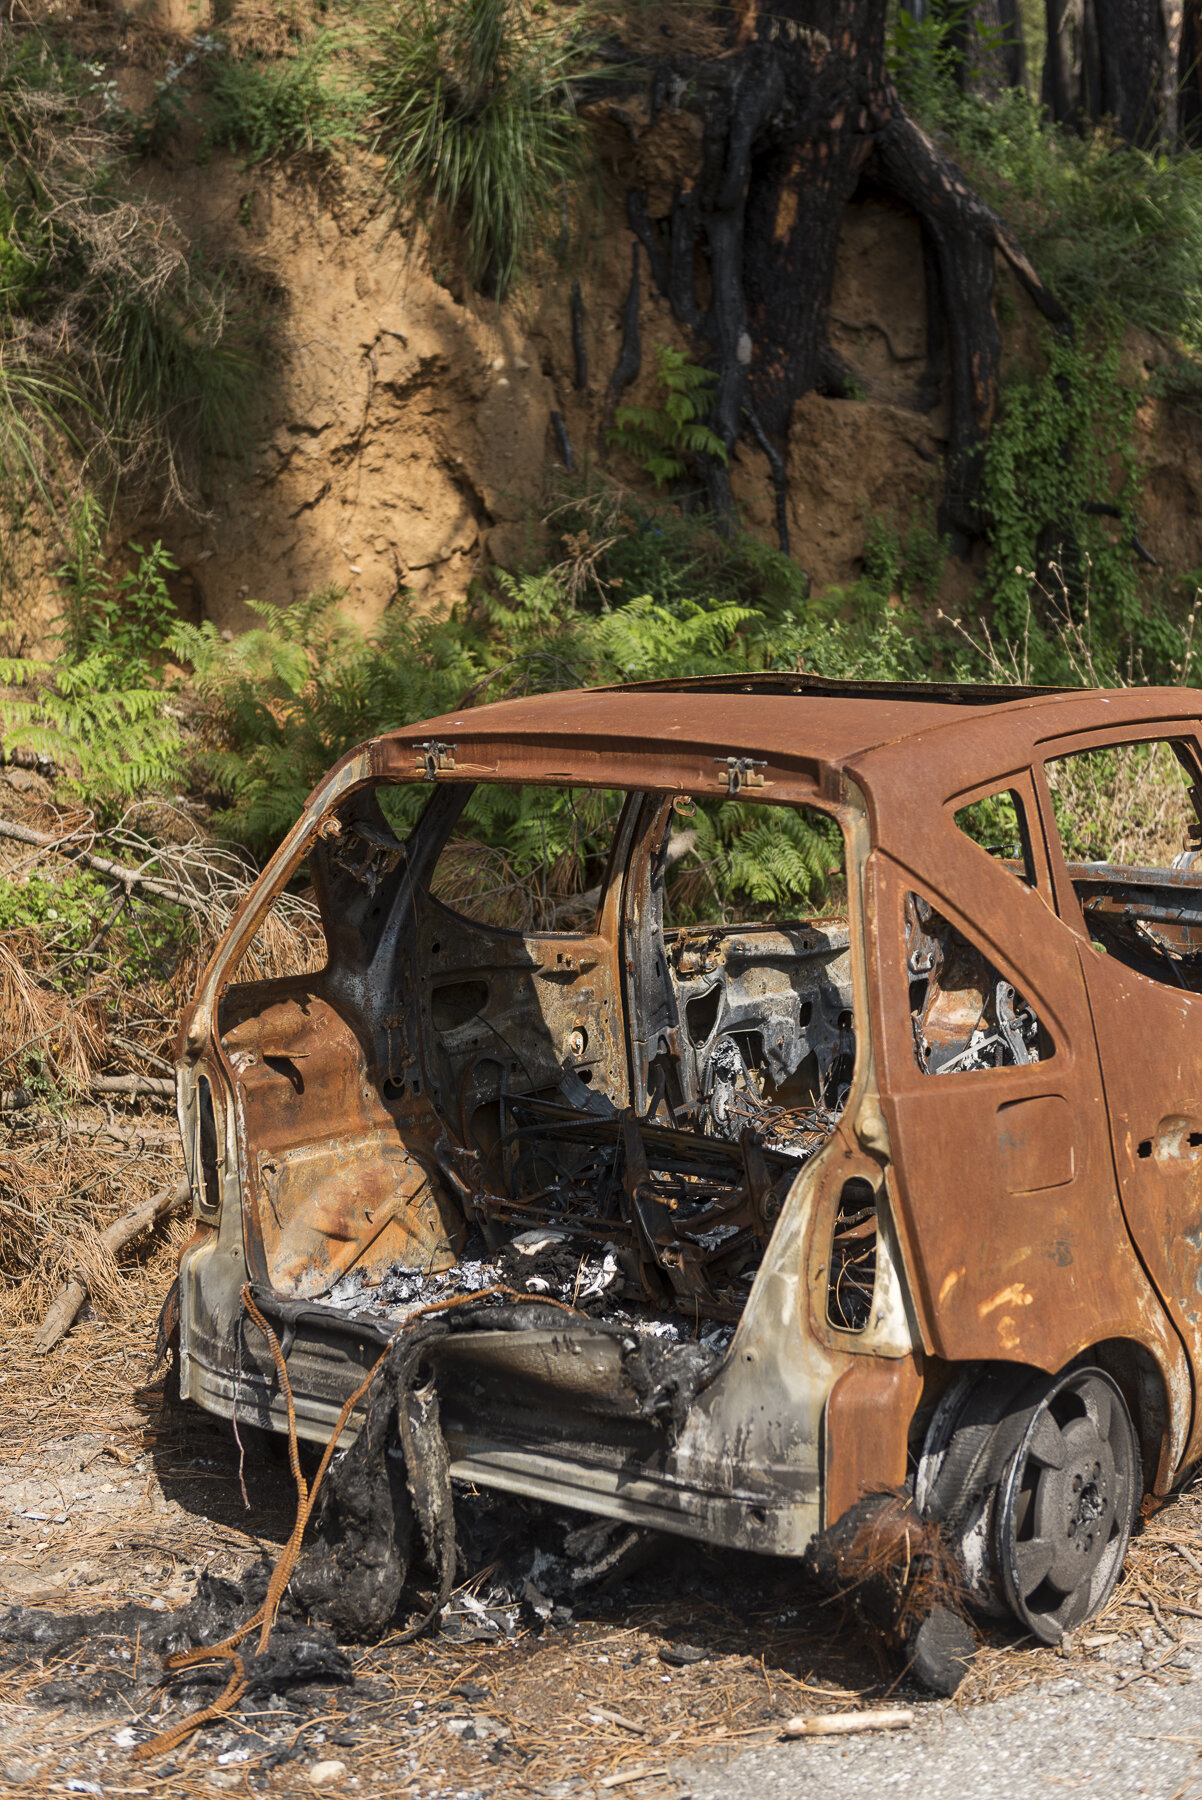  Una macchina andata in fiamme sulla strada che collega Reggio Calabria al Santuario di Polsi, nel Parco Nazionale dell’Aspromonte, il 12 agosto 2018.© JACOPO LA FORGIA / MICHELE SPATARI 